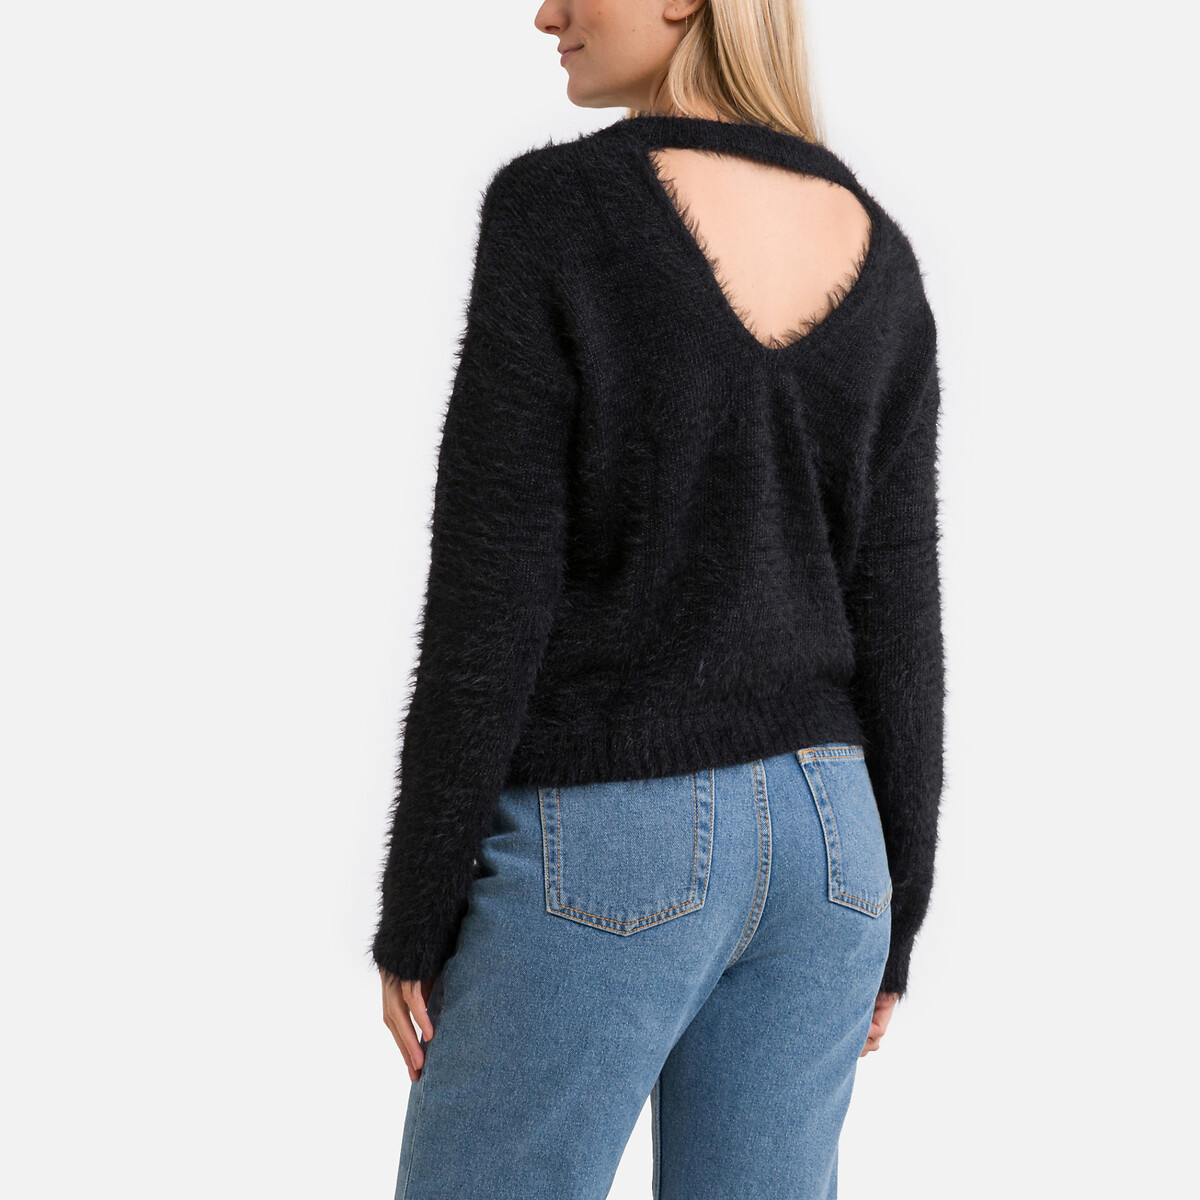 Пуловер из трикотажа с начесом круглый вырез L черный пуловер joyce из витого трикотажа верх с начесом xl бежевый